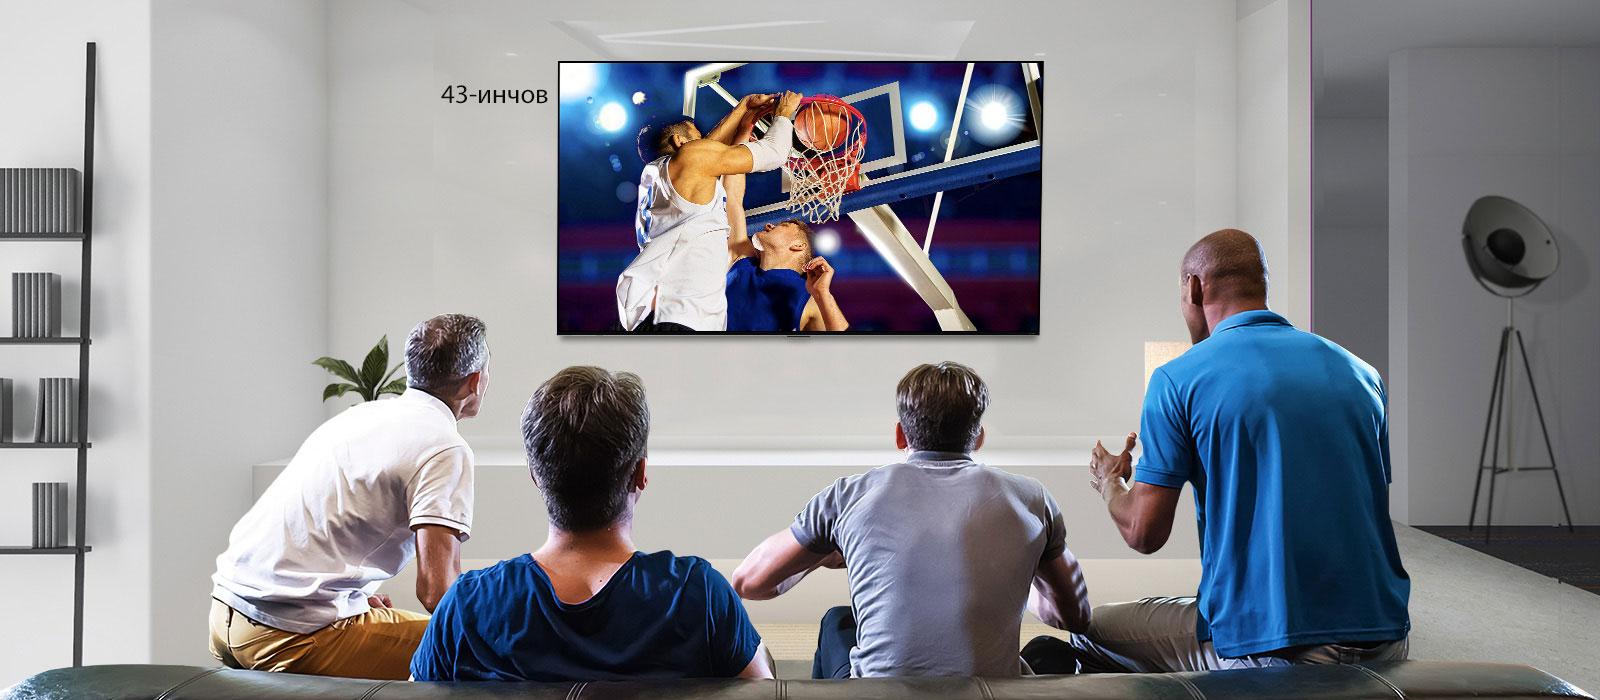 Изглед отзад на монтиран на стената телевизор, показващ баскетболна игра с четирима мъже, които гледат. Превъртането наляво-надясно показва разликата в размера между 43-инчов и 86-инчов екран.